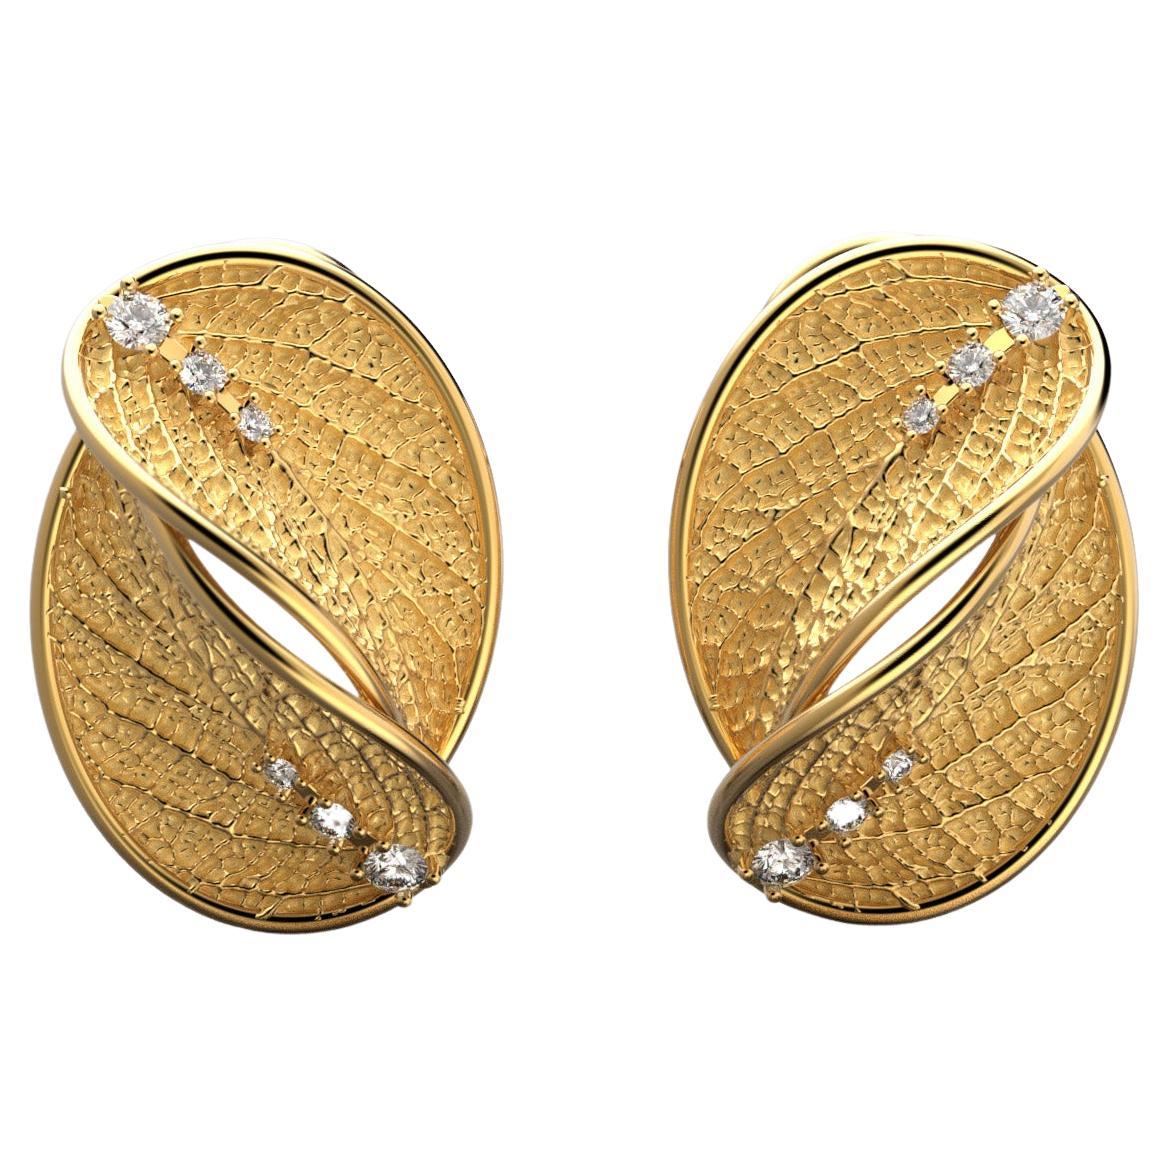 Auf Bestellung gefertigte Diamantohrstecker aus 18k Gold mit Blattdesign. Flora Collection.
Die Ohrringe der Kollektion Flora haben die Form eines Eschenblatts, das in vielen Kulturen als heiliger Baum gilt, ein Symbol der Sonne ist und seit jeher